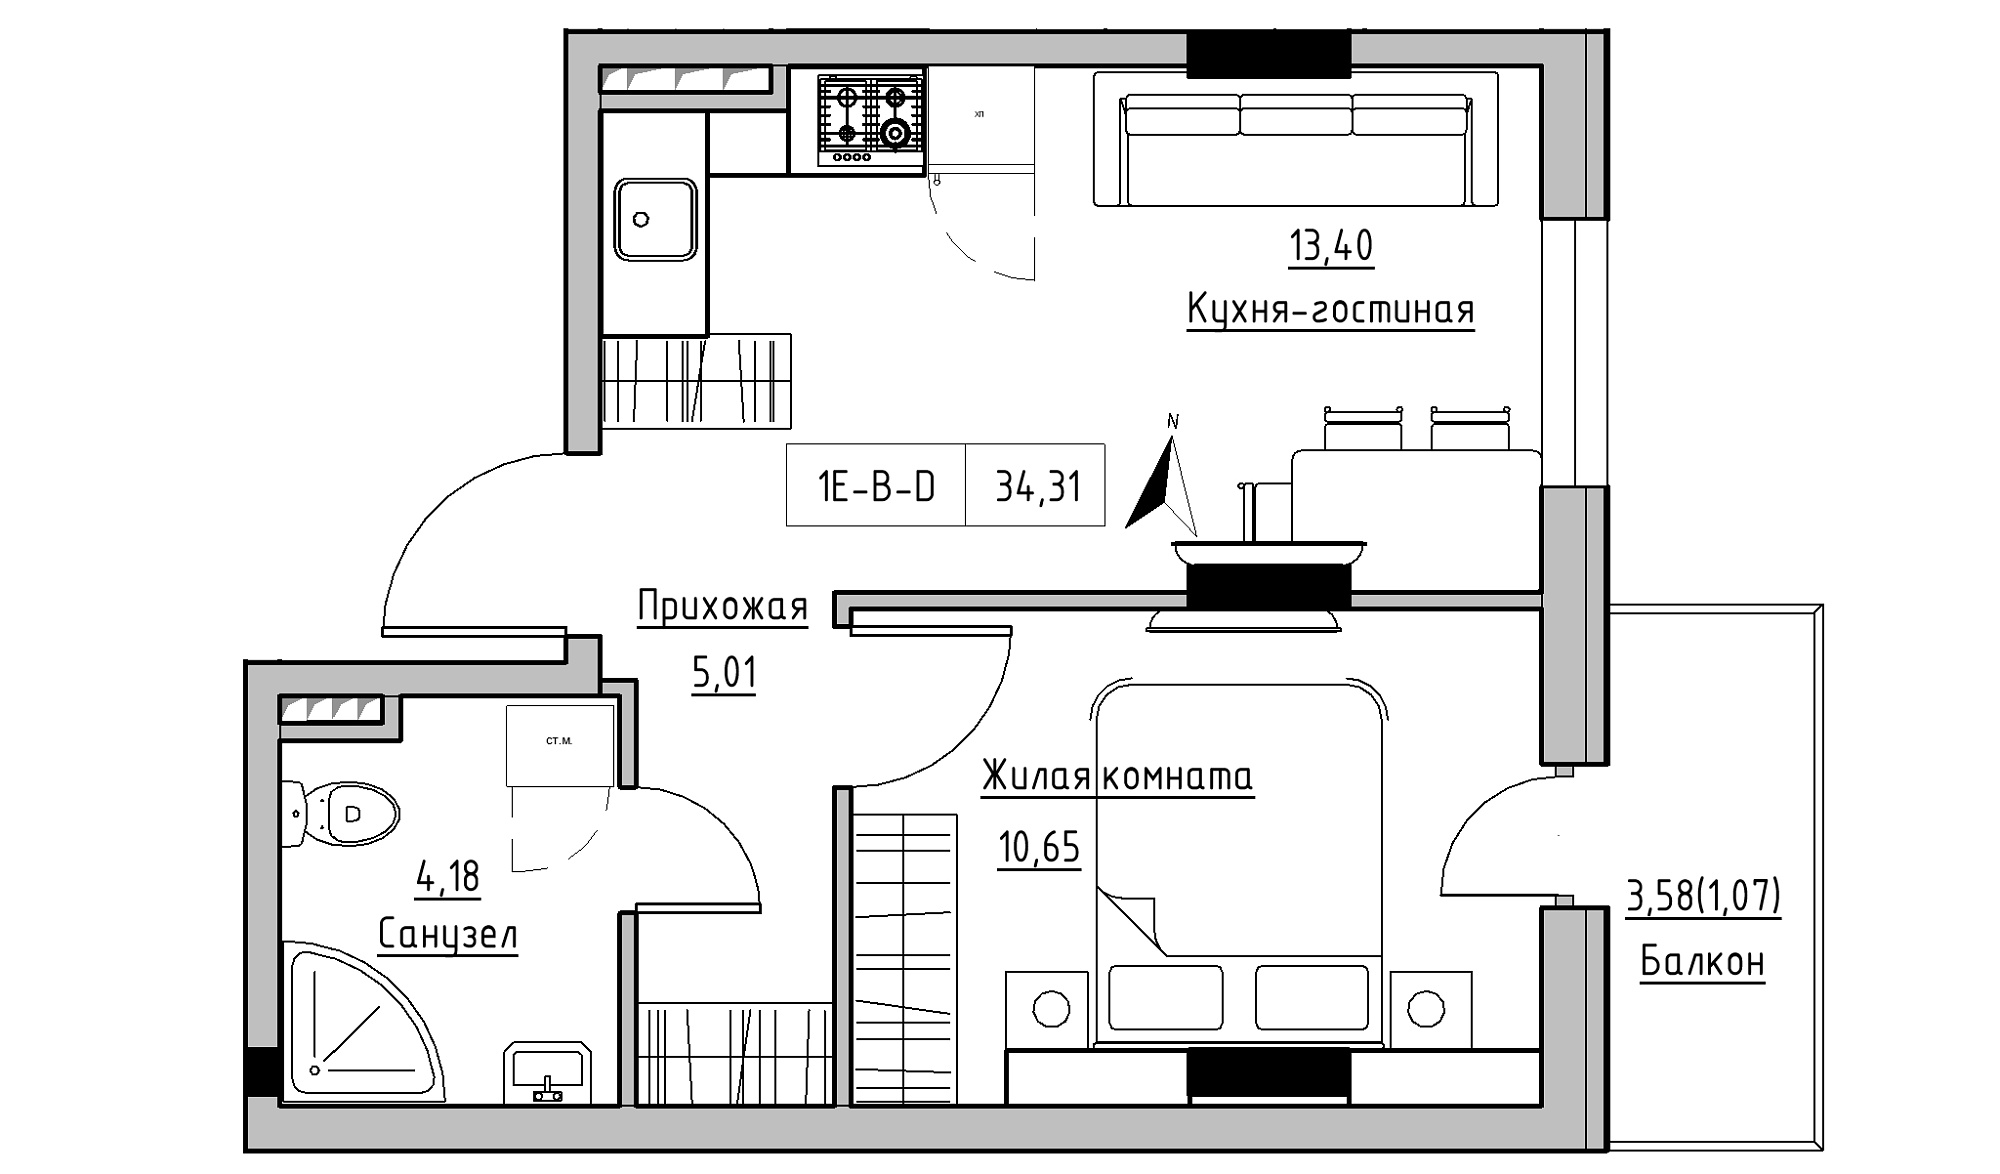 Планування 1-к квартира площею 34.31м2, KS-025-03/0002.